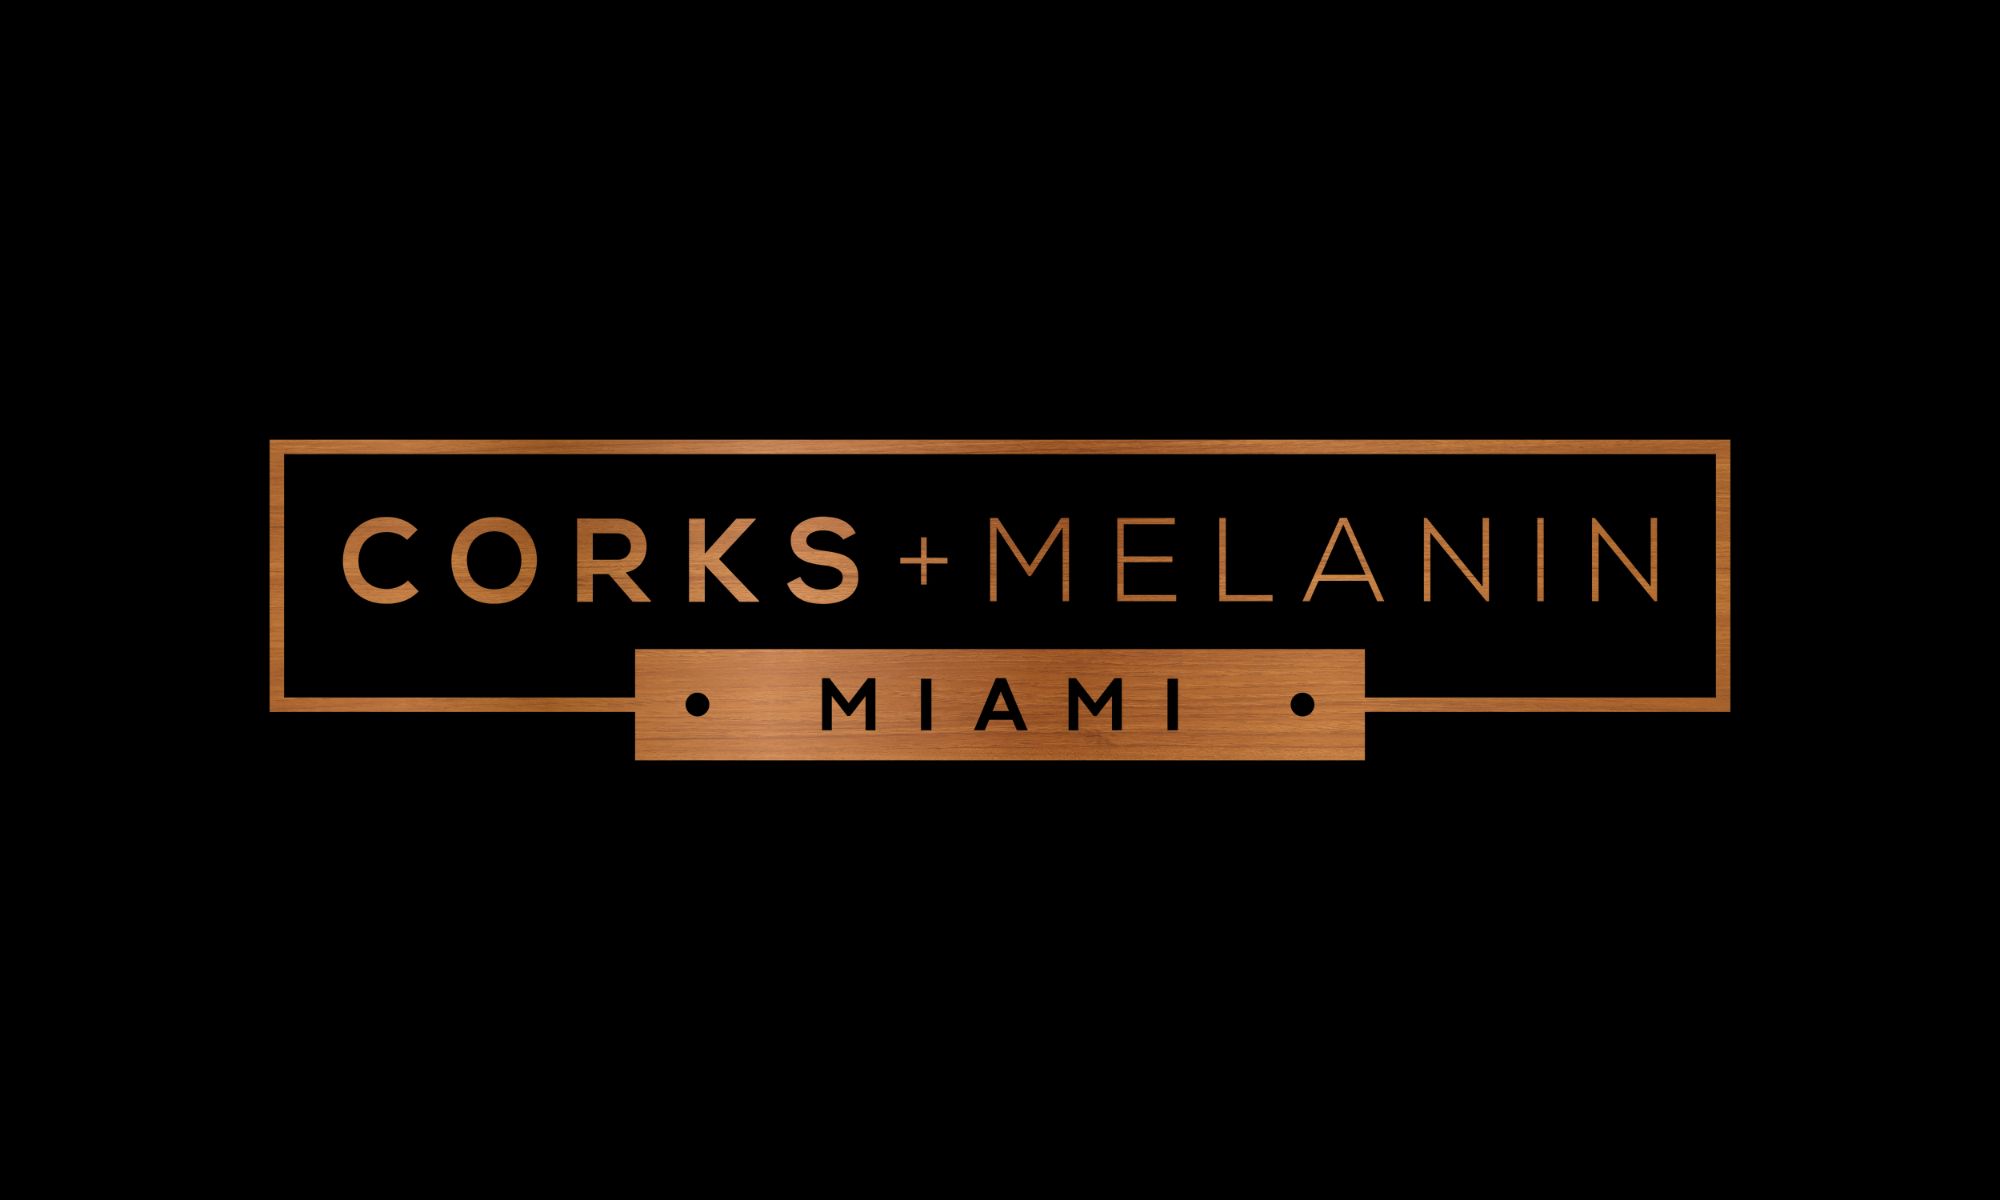 Corks + Melanin Miami